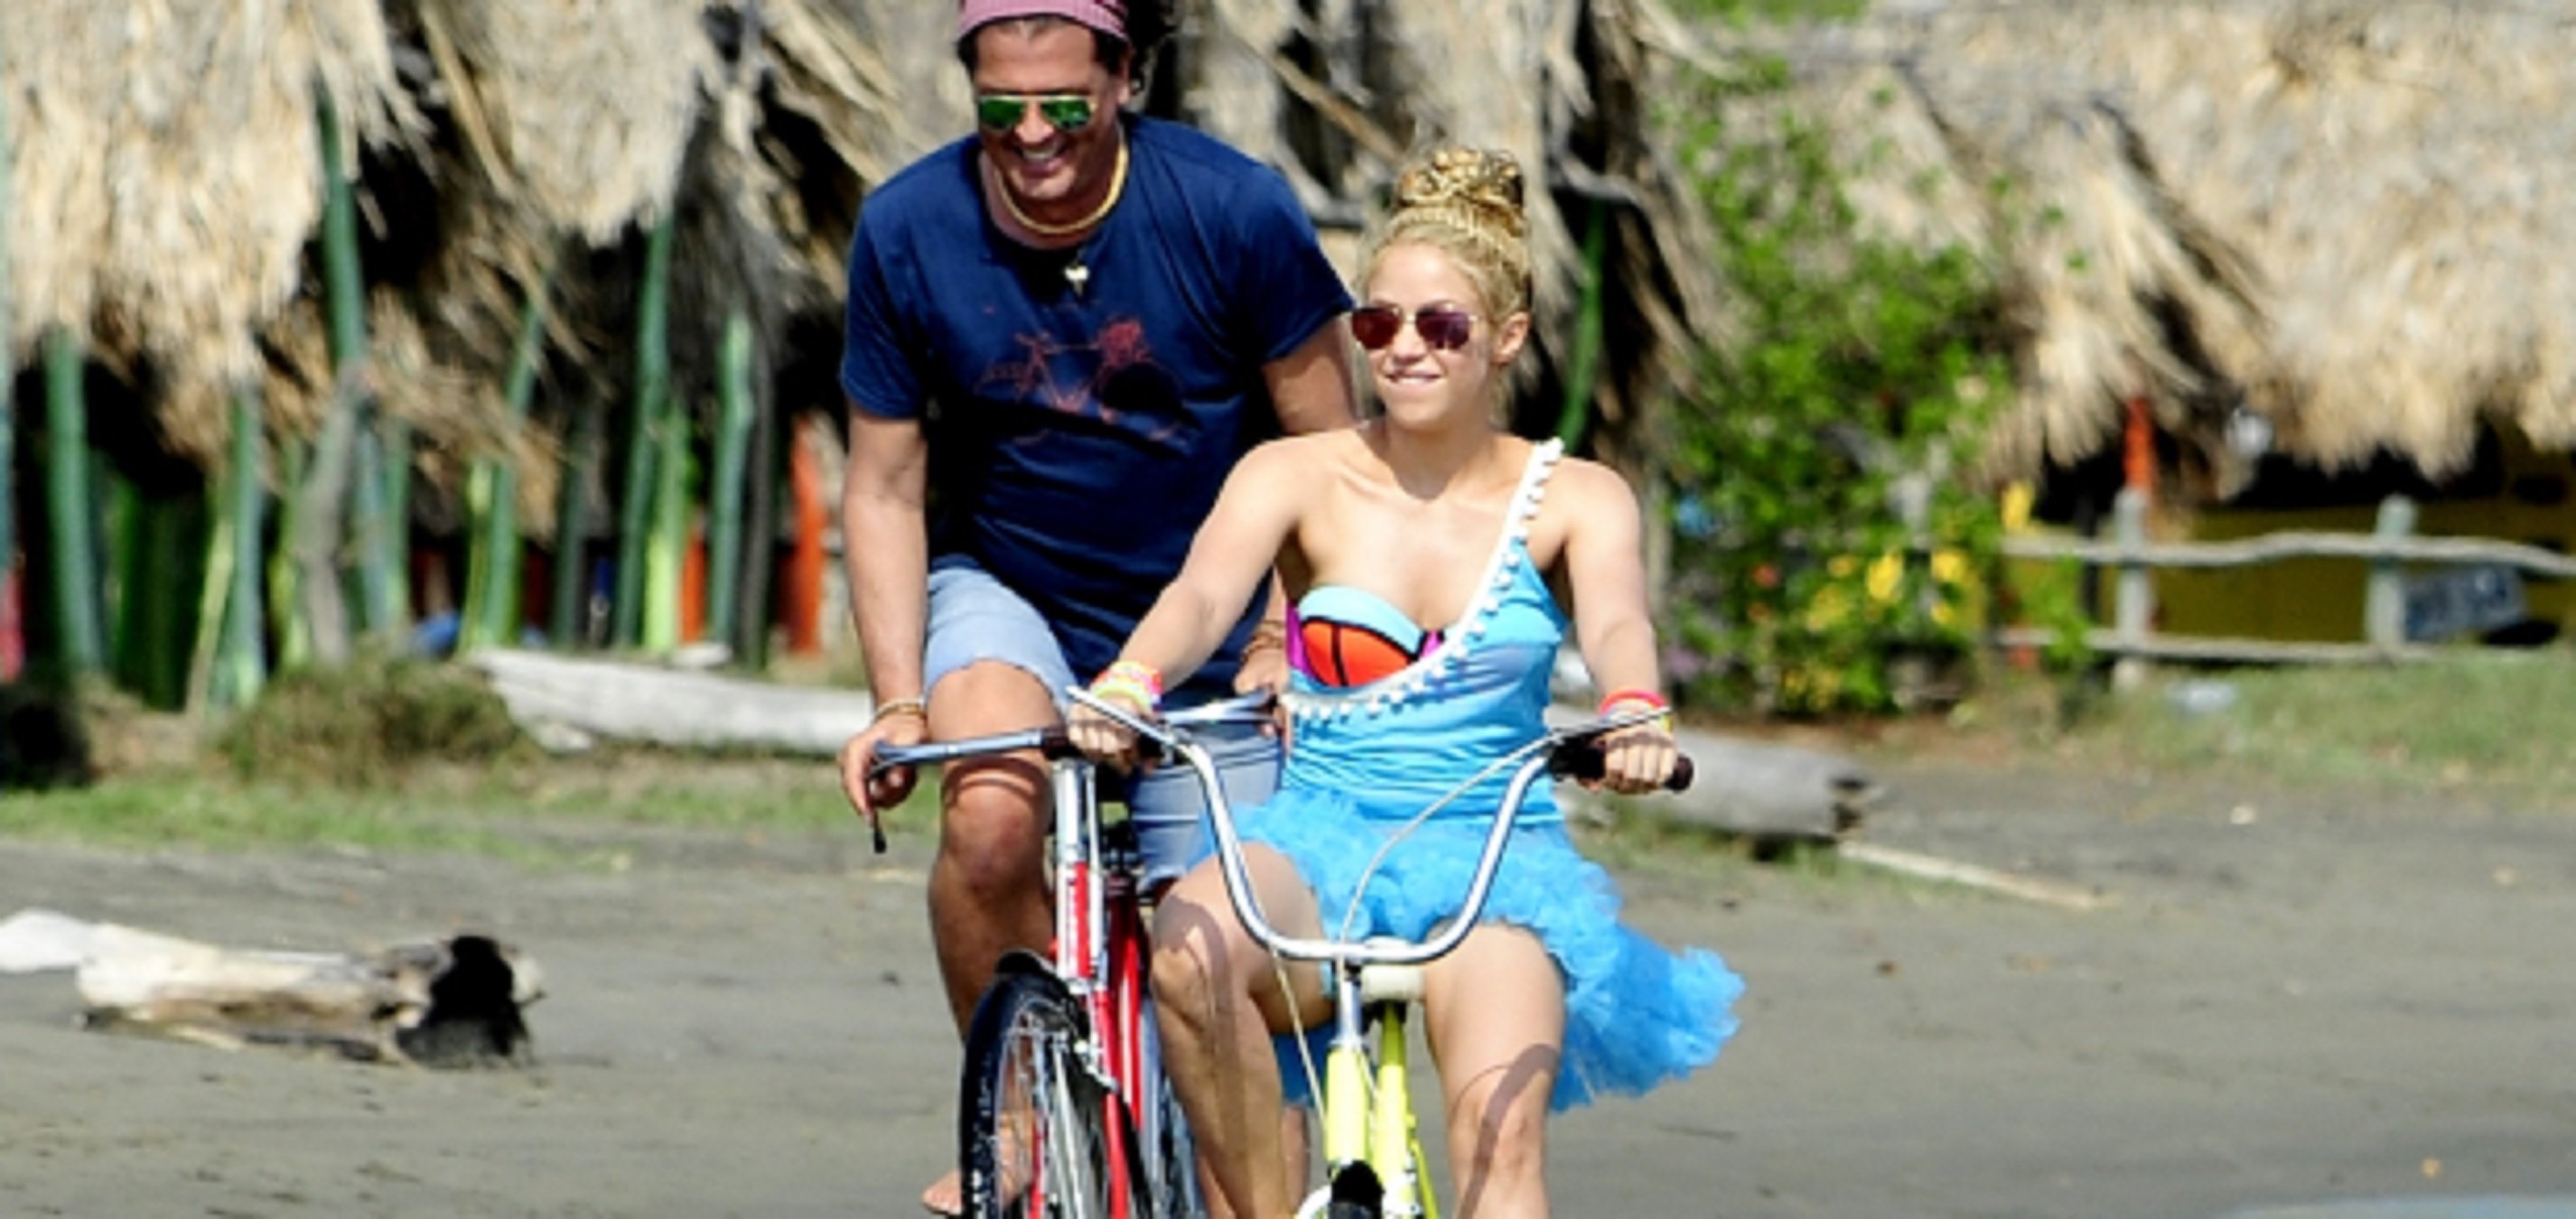 Carlos Vives, cantante de 'La Bicicleta' con Shakira, traiciona a la colombiana: prueba demoledora